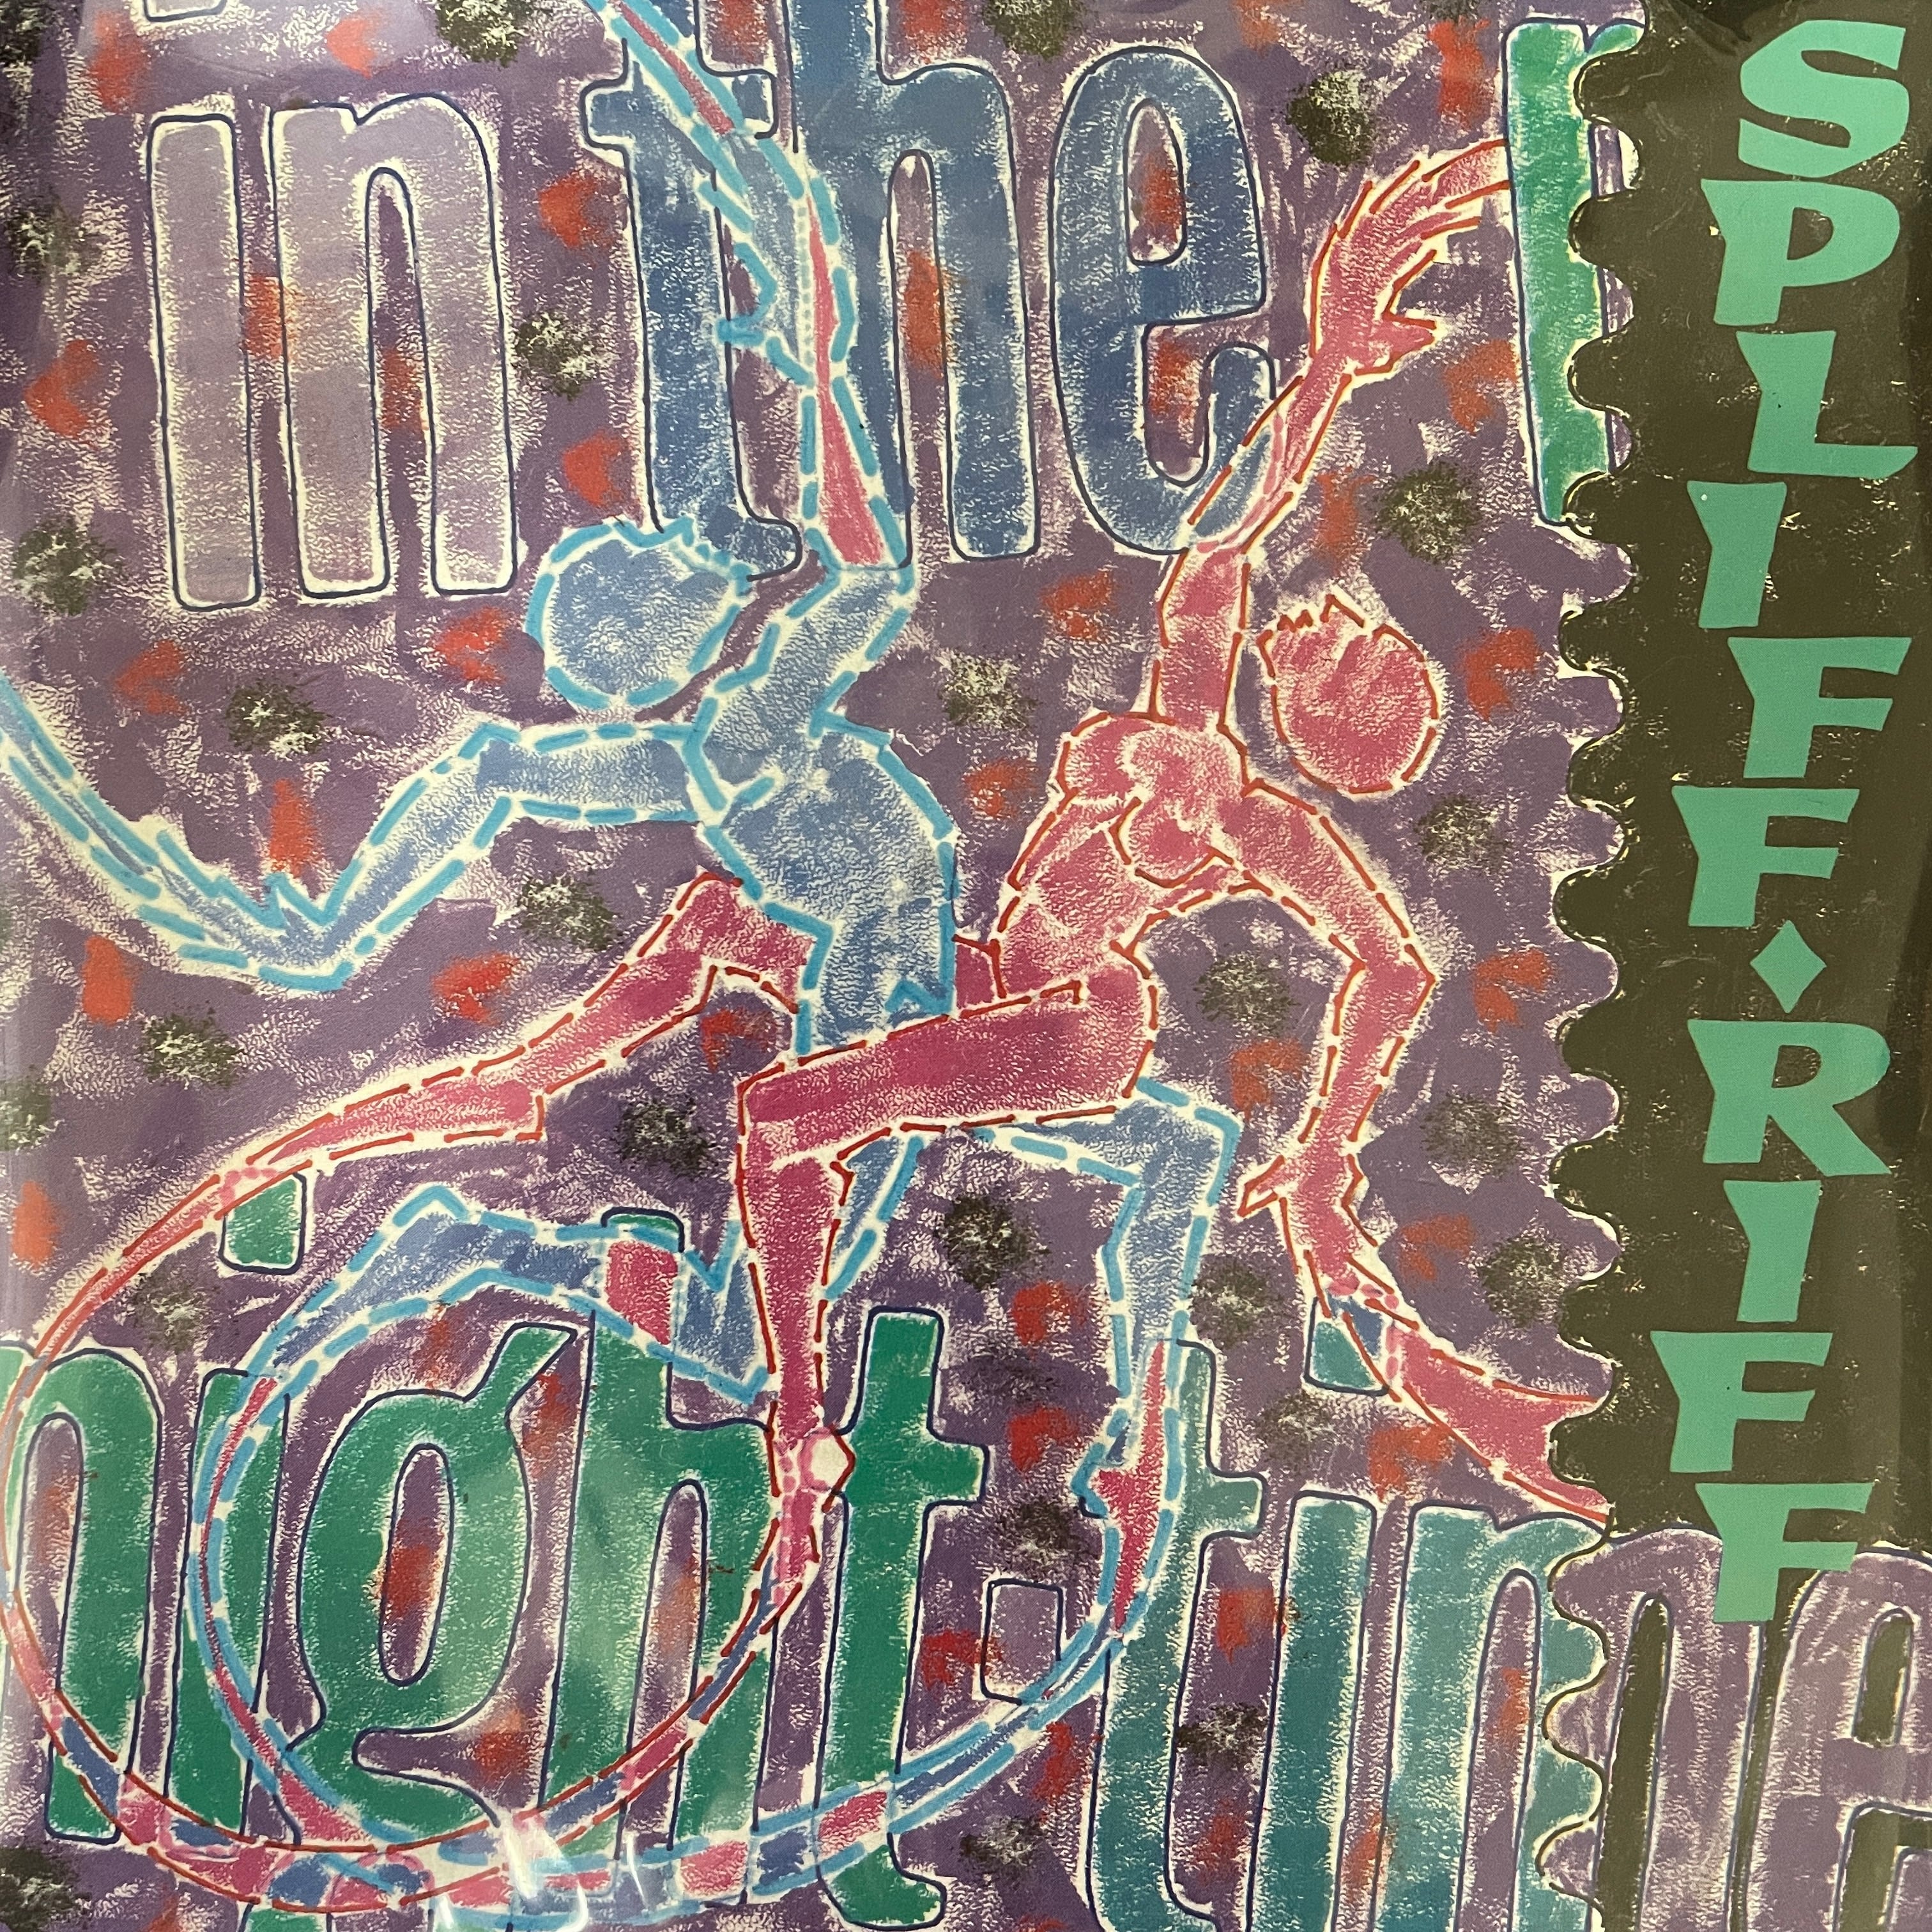 Spliff Riff - It Doesn't Matter【7-20864】